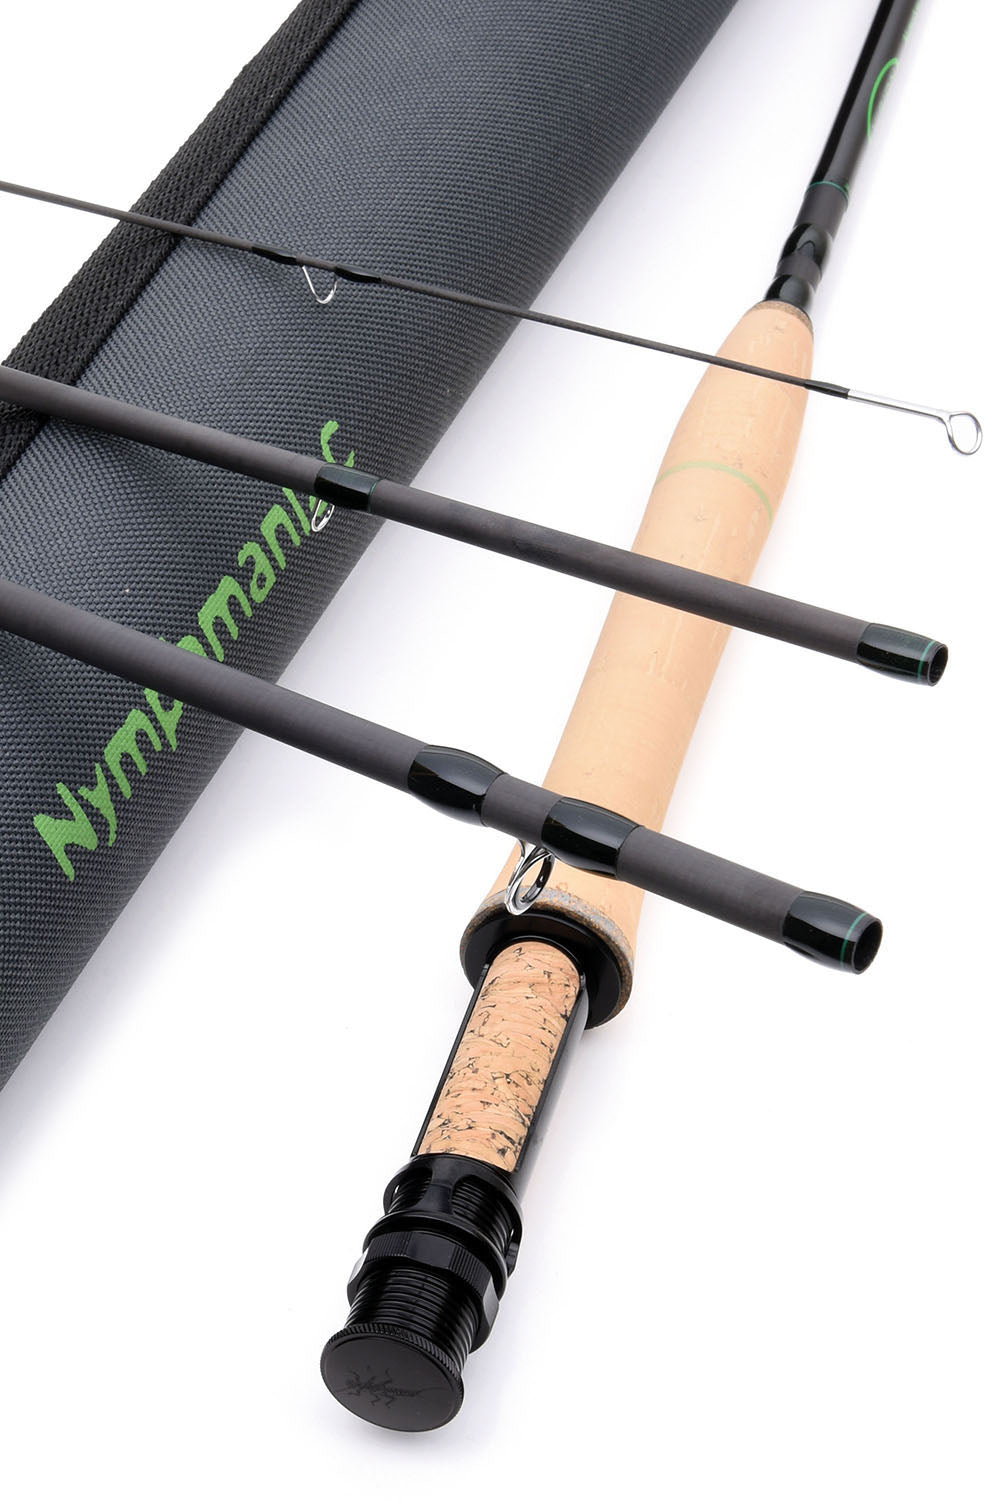 Merisuola Musky Fly Rod – Vision Fly Fishing